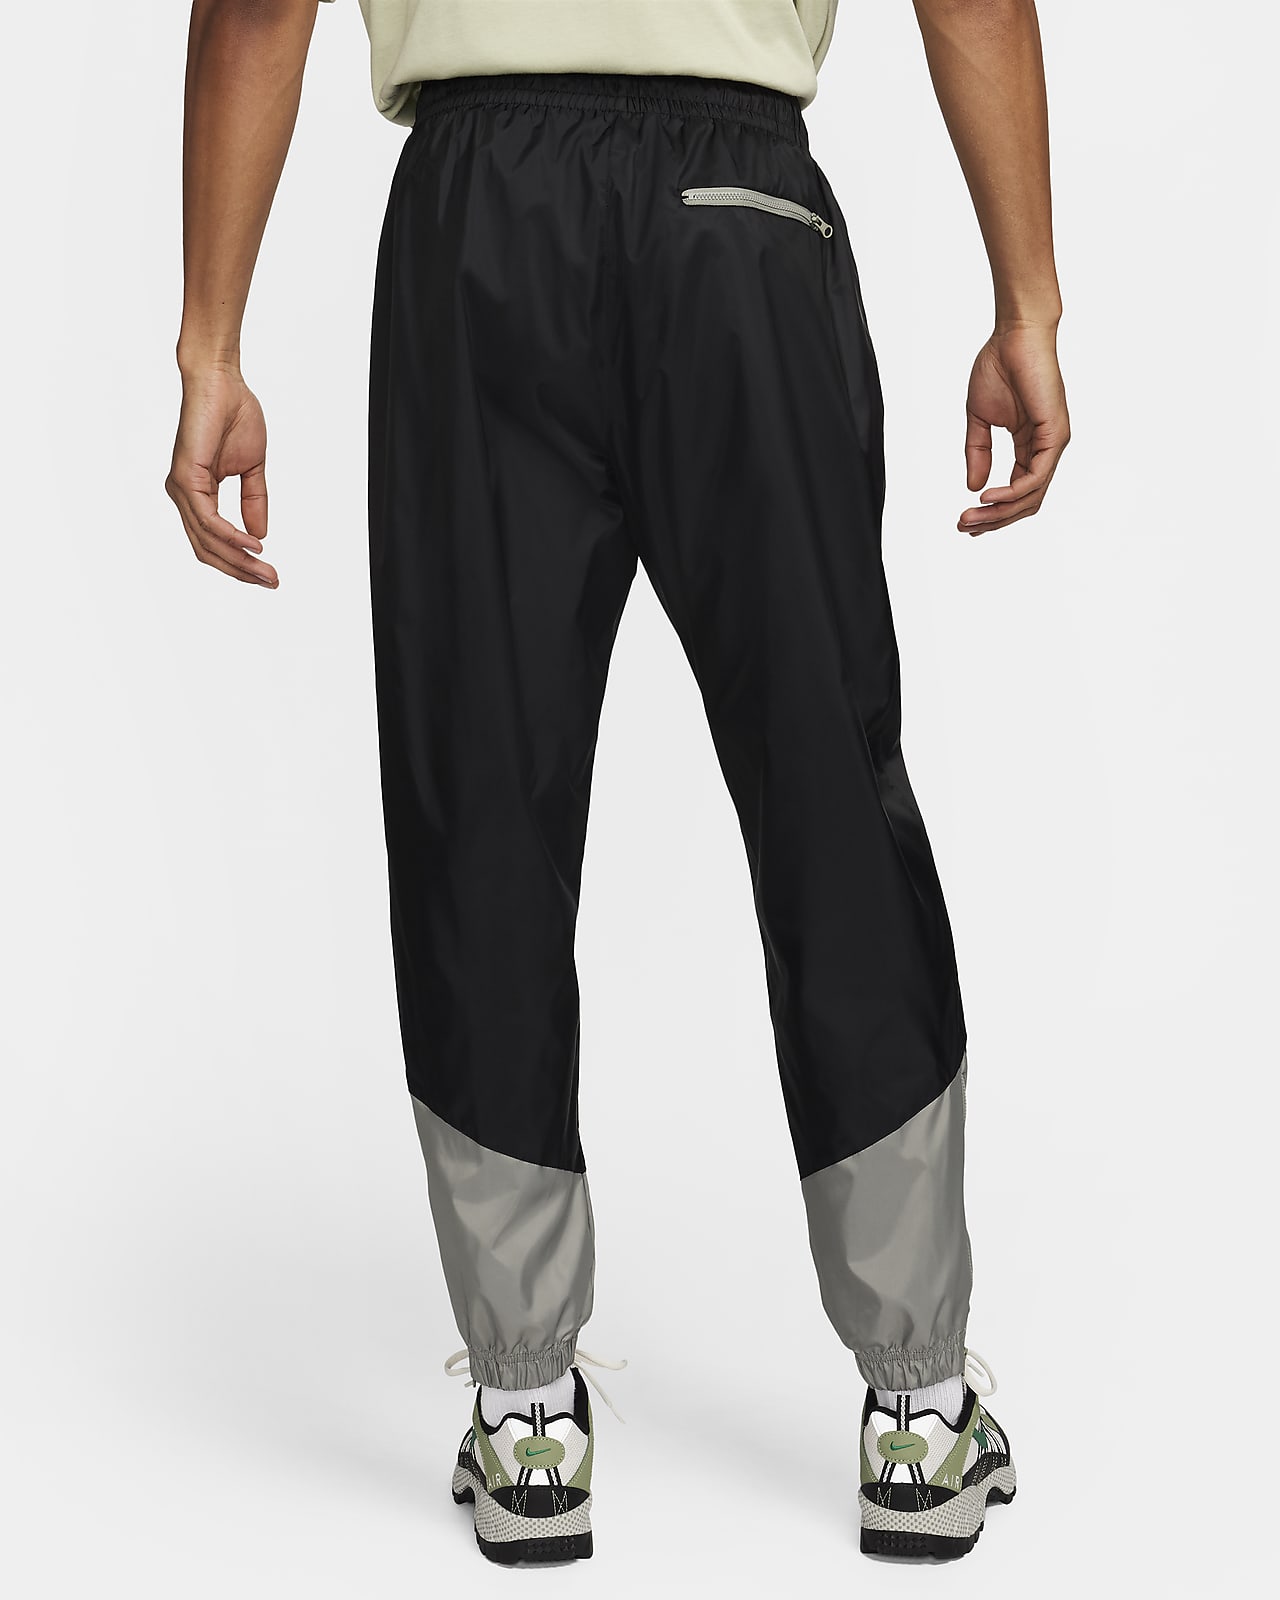 Custom Nike Waterproof Pants